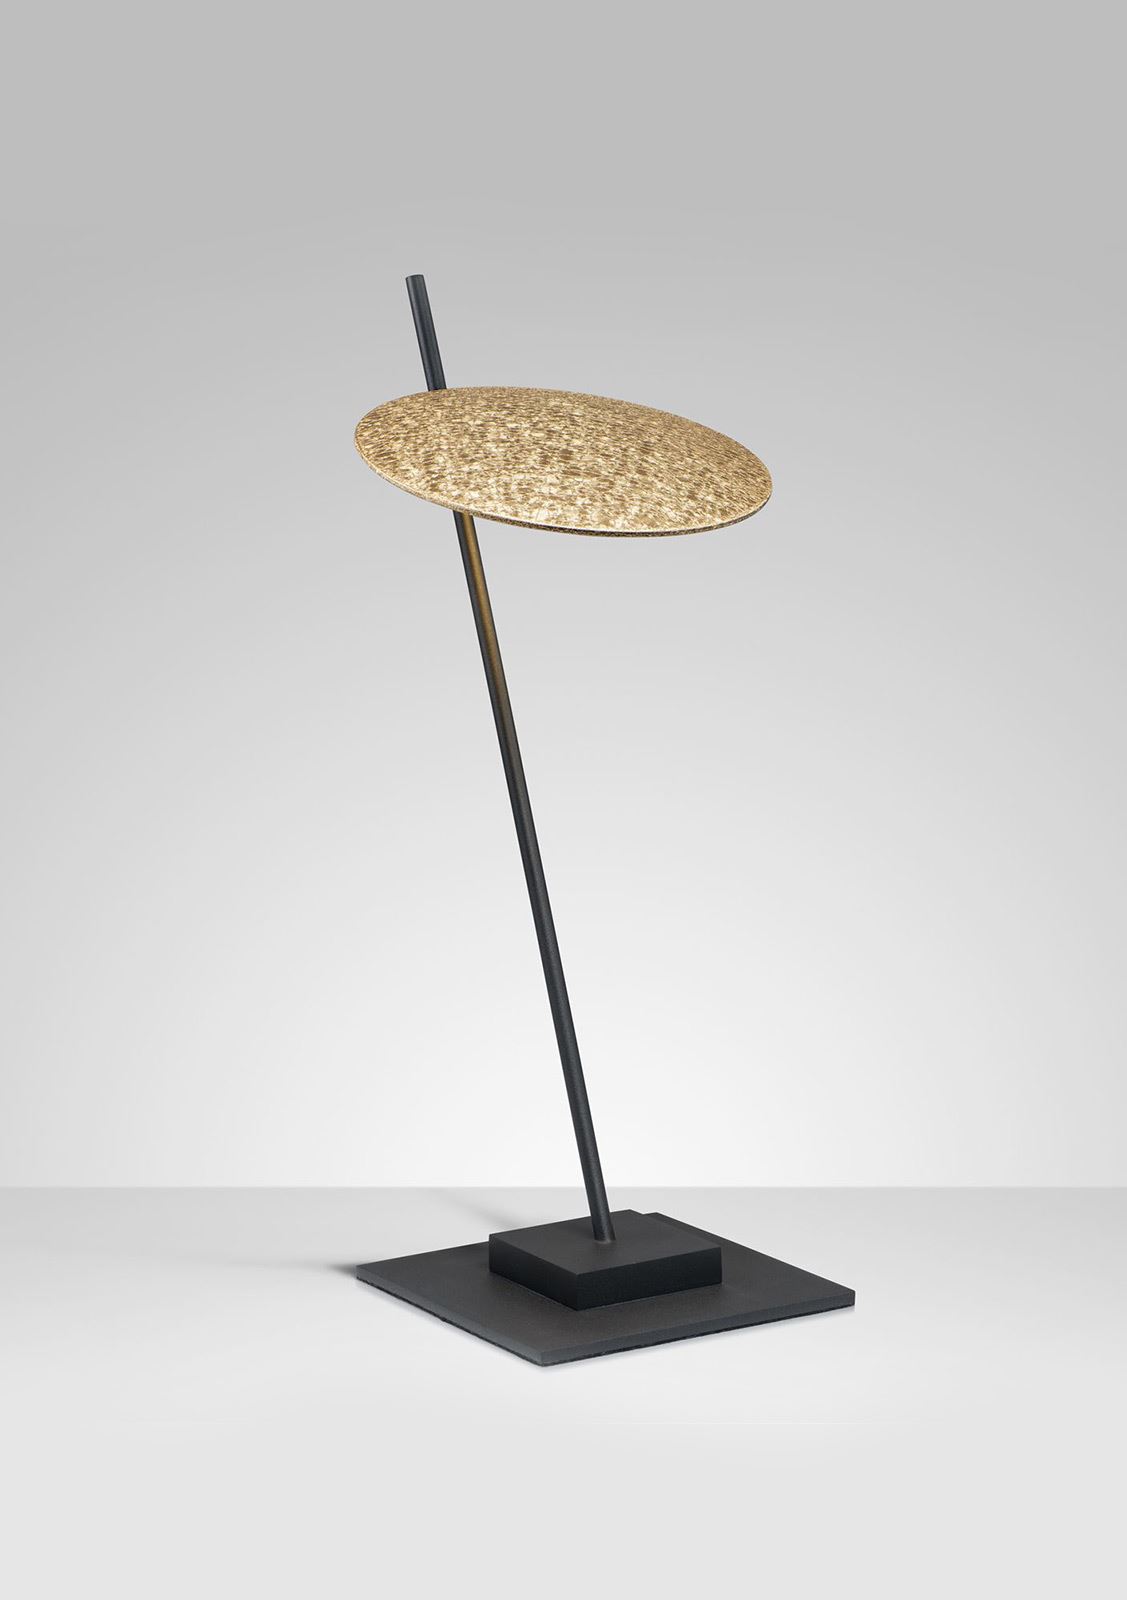 גופי תאורה מקטגוריית: מנורות שולחן  ,שם המוצר: SUPER NOVA